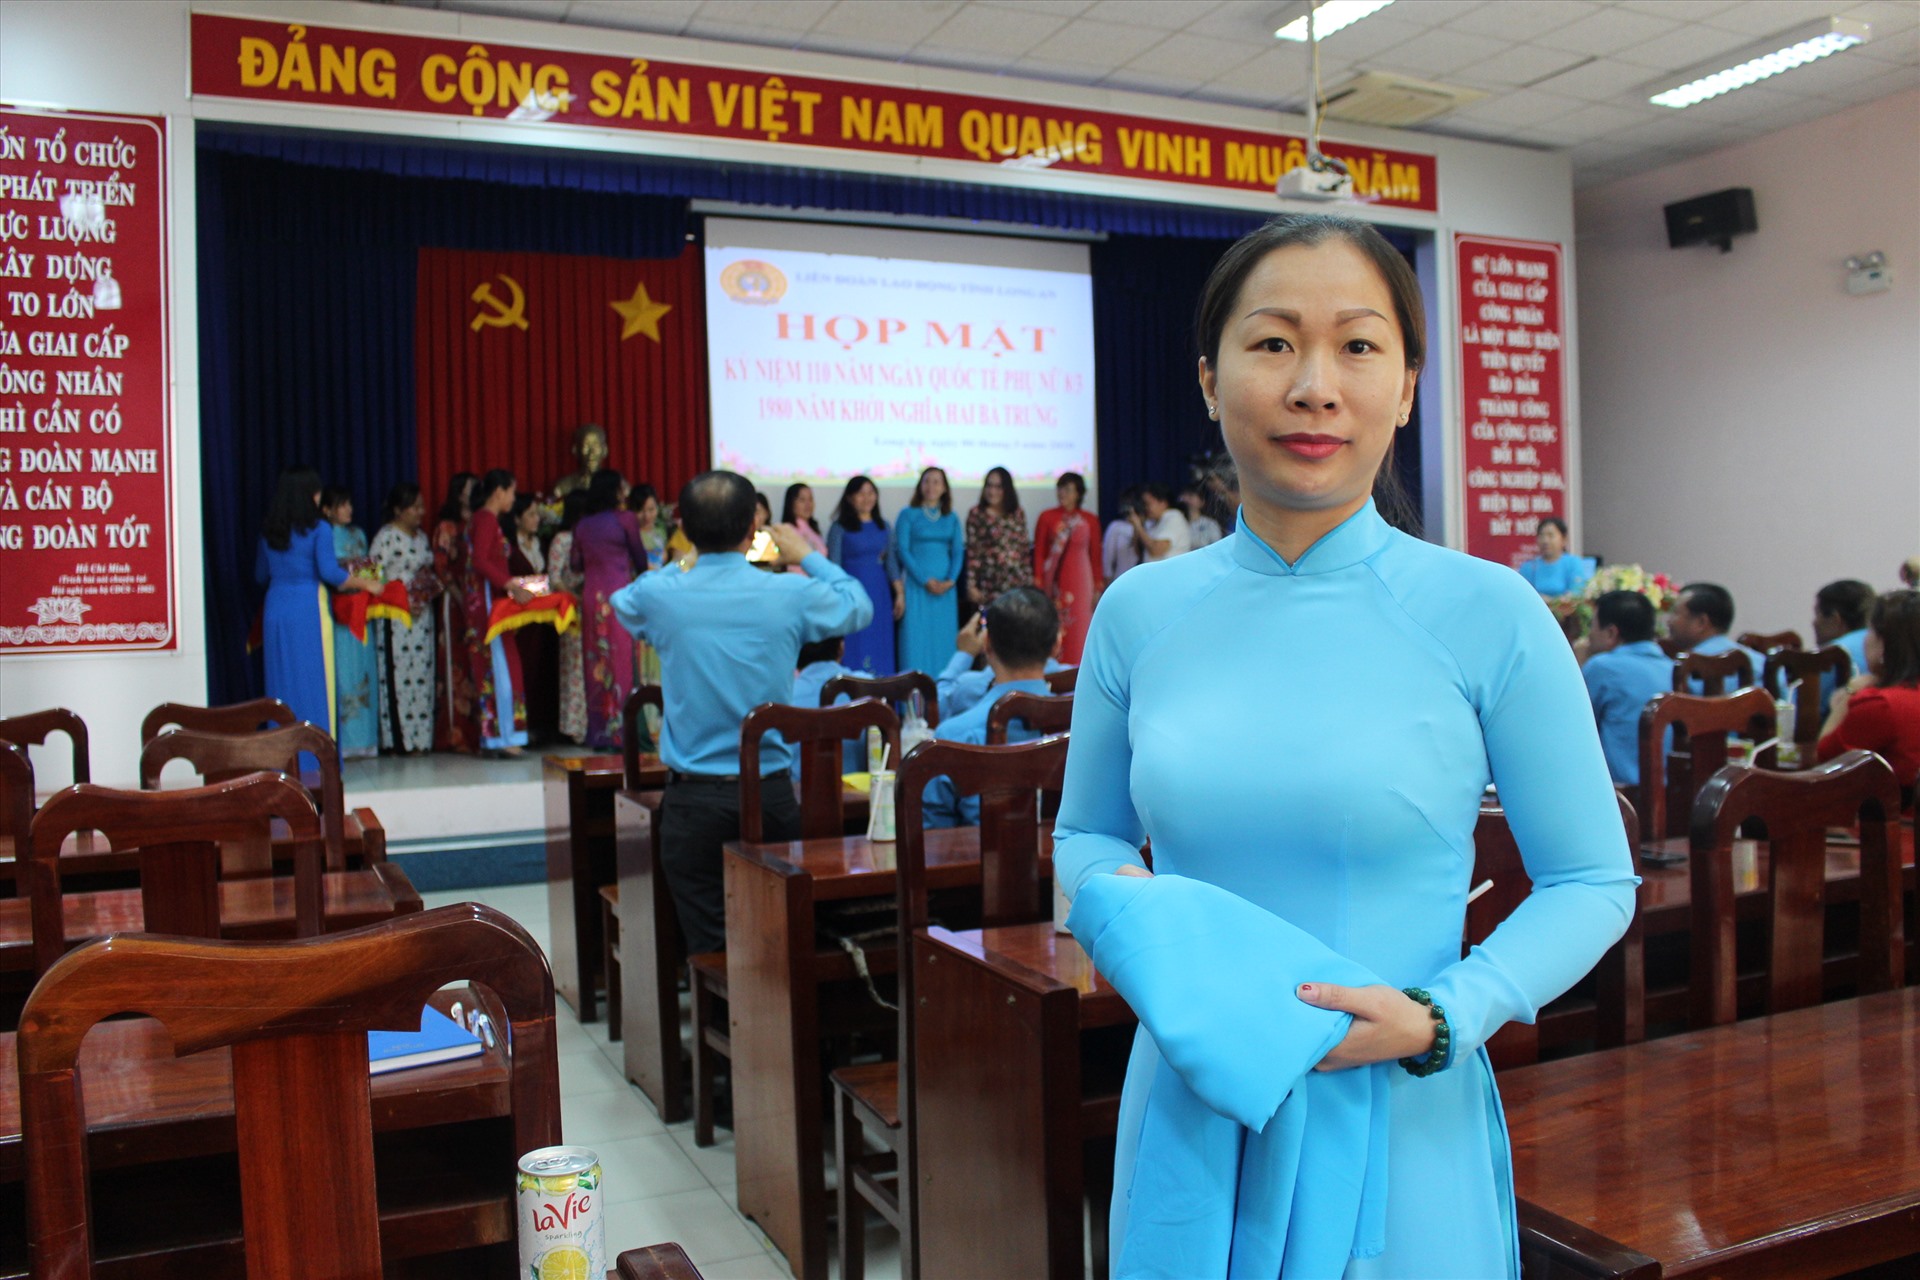 Chị Trần Thị Hồng Yến (cán bộ LĐLĐ huyện Bến Lức, tỉnh Long An) mặc áo dài màu xanh công đoàn đi dự lễ 8.3, được tặng thêm 1 bộ áo dài công đoàn khác. Ảnh: K.Q